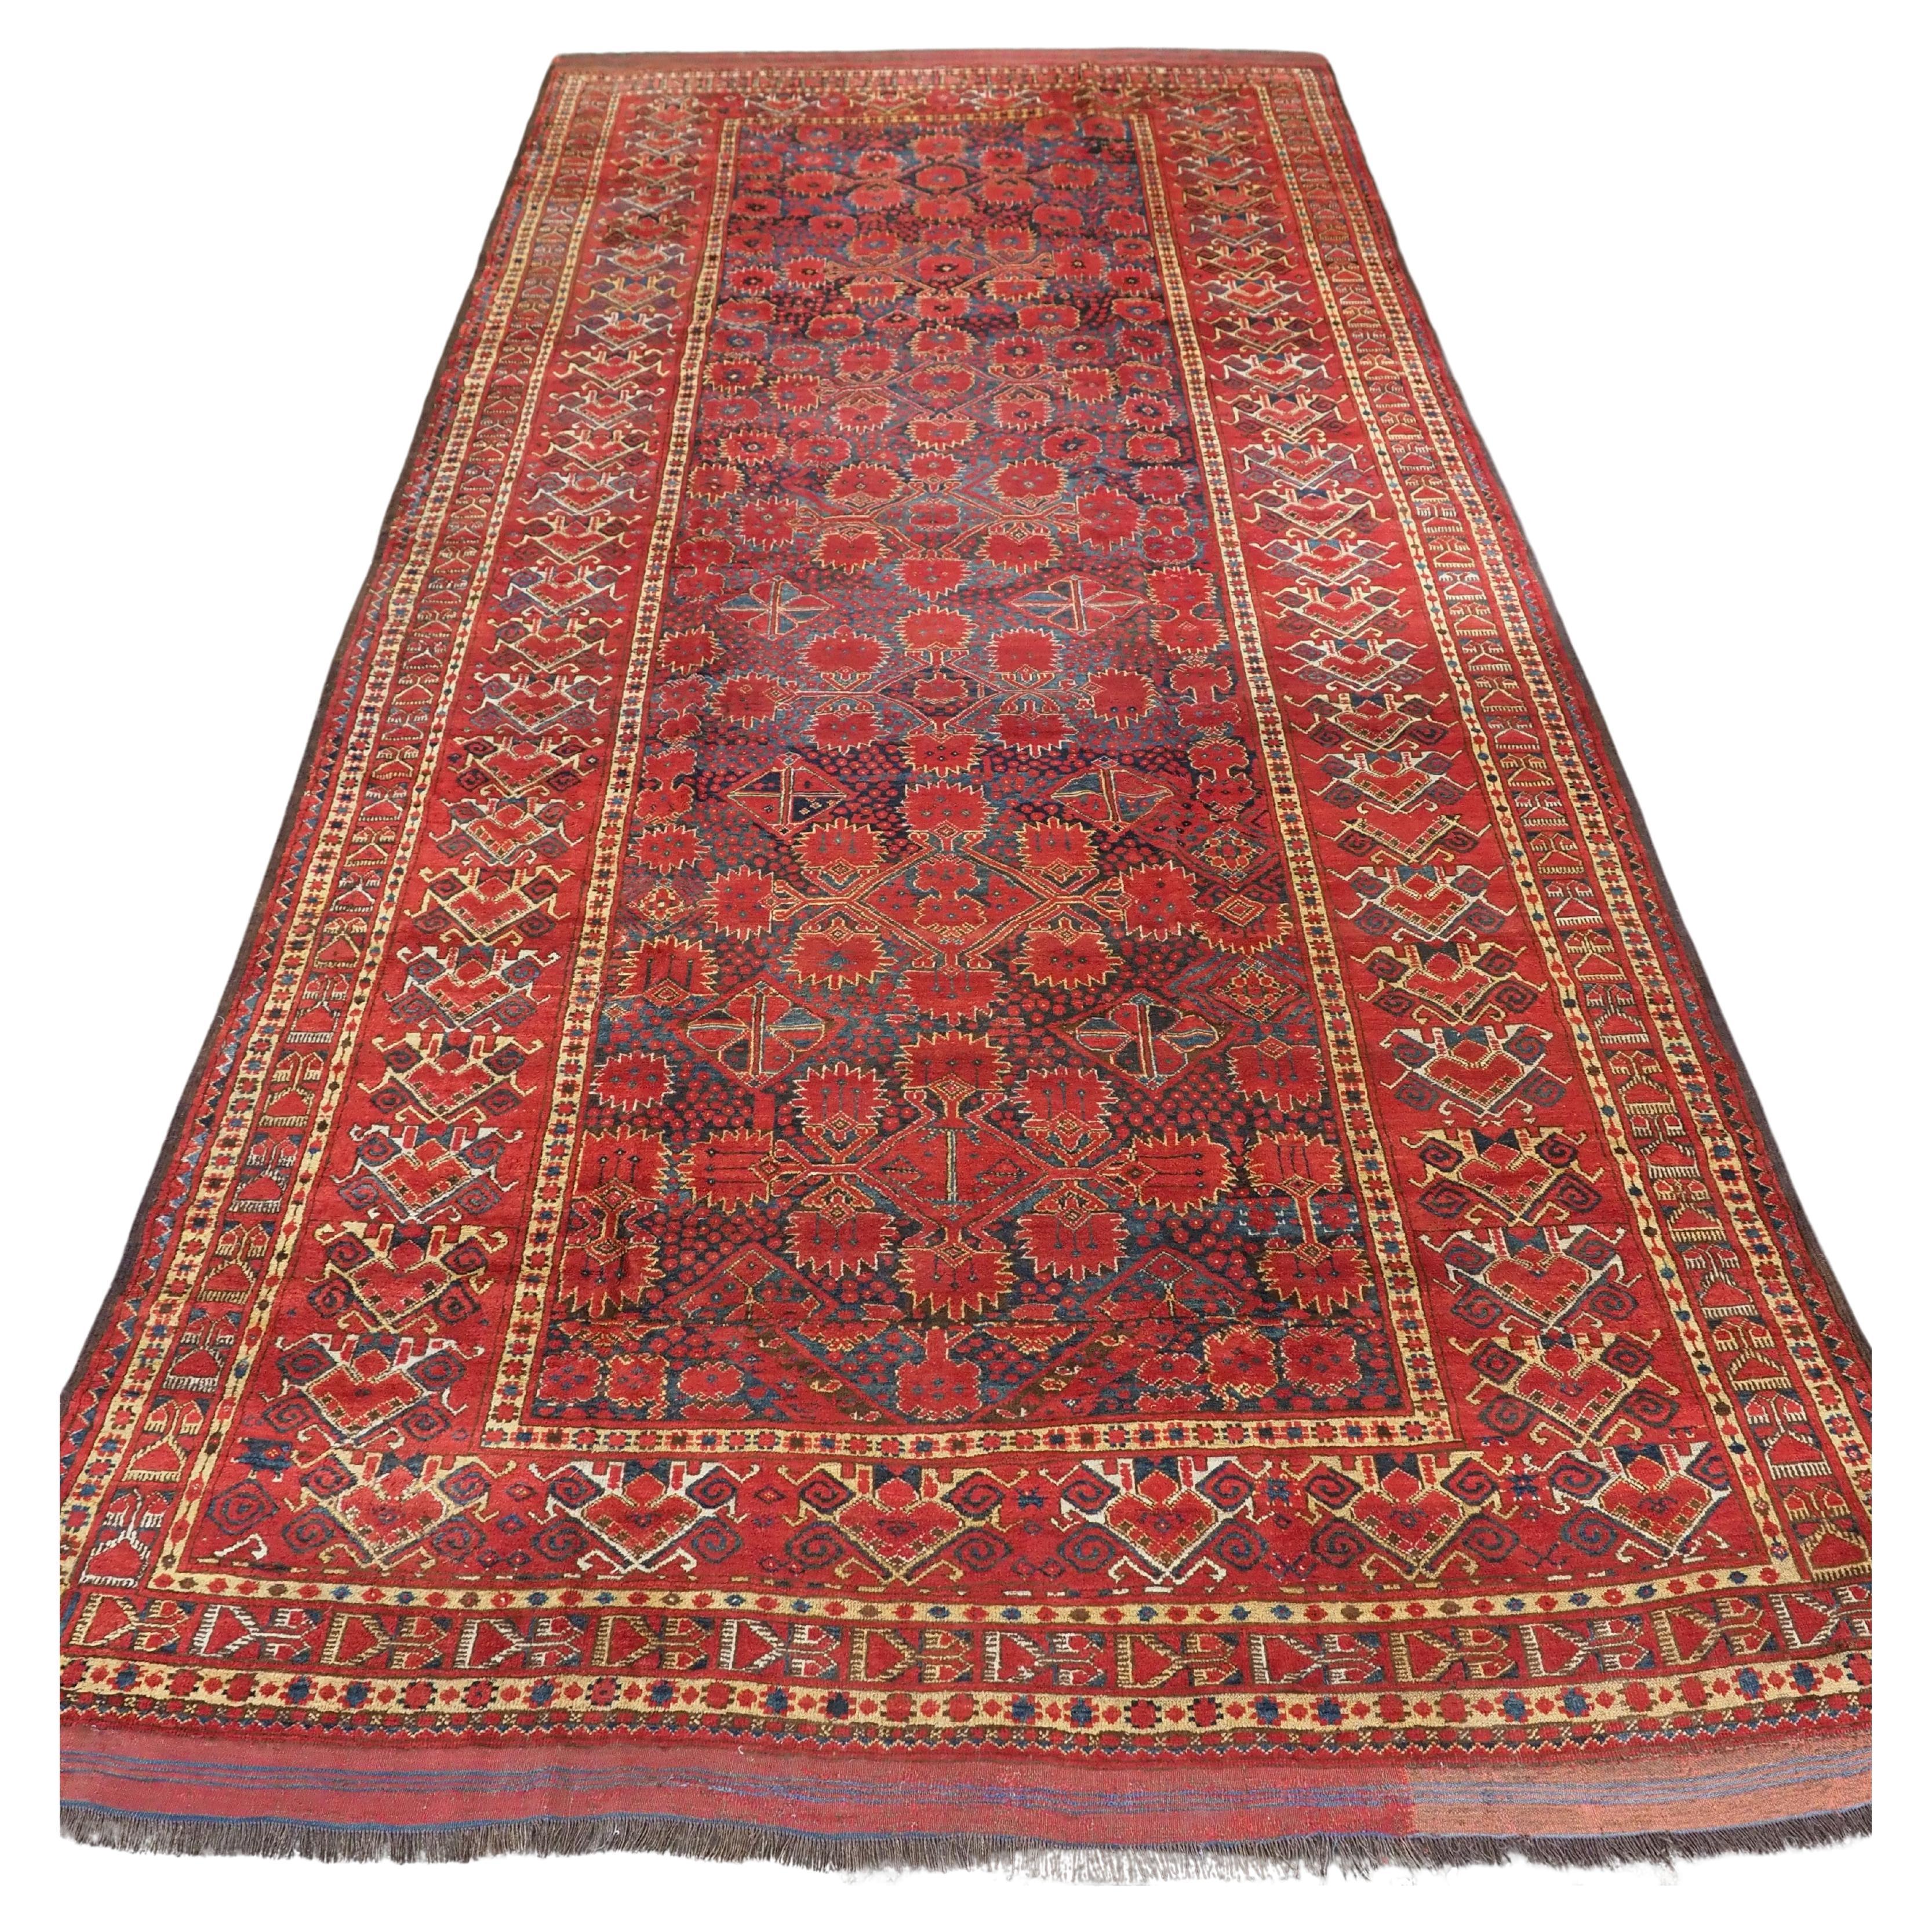 Antiker Ersari Beshir Turkmen kelleh-Teppich von außergewöhnlicher Größe.  Circa 1870.